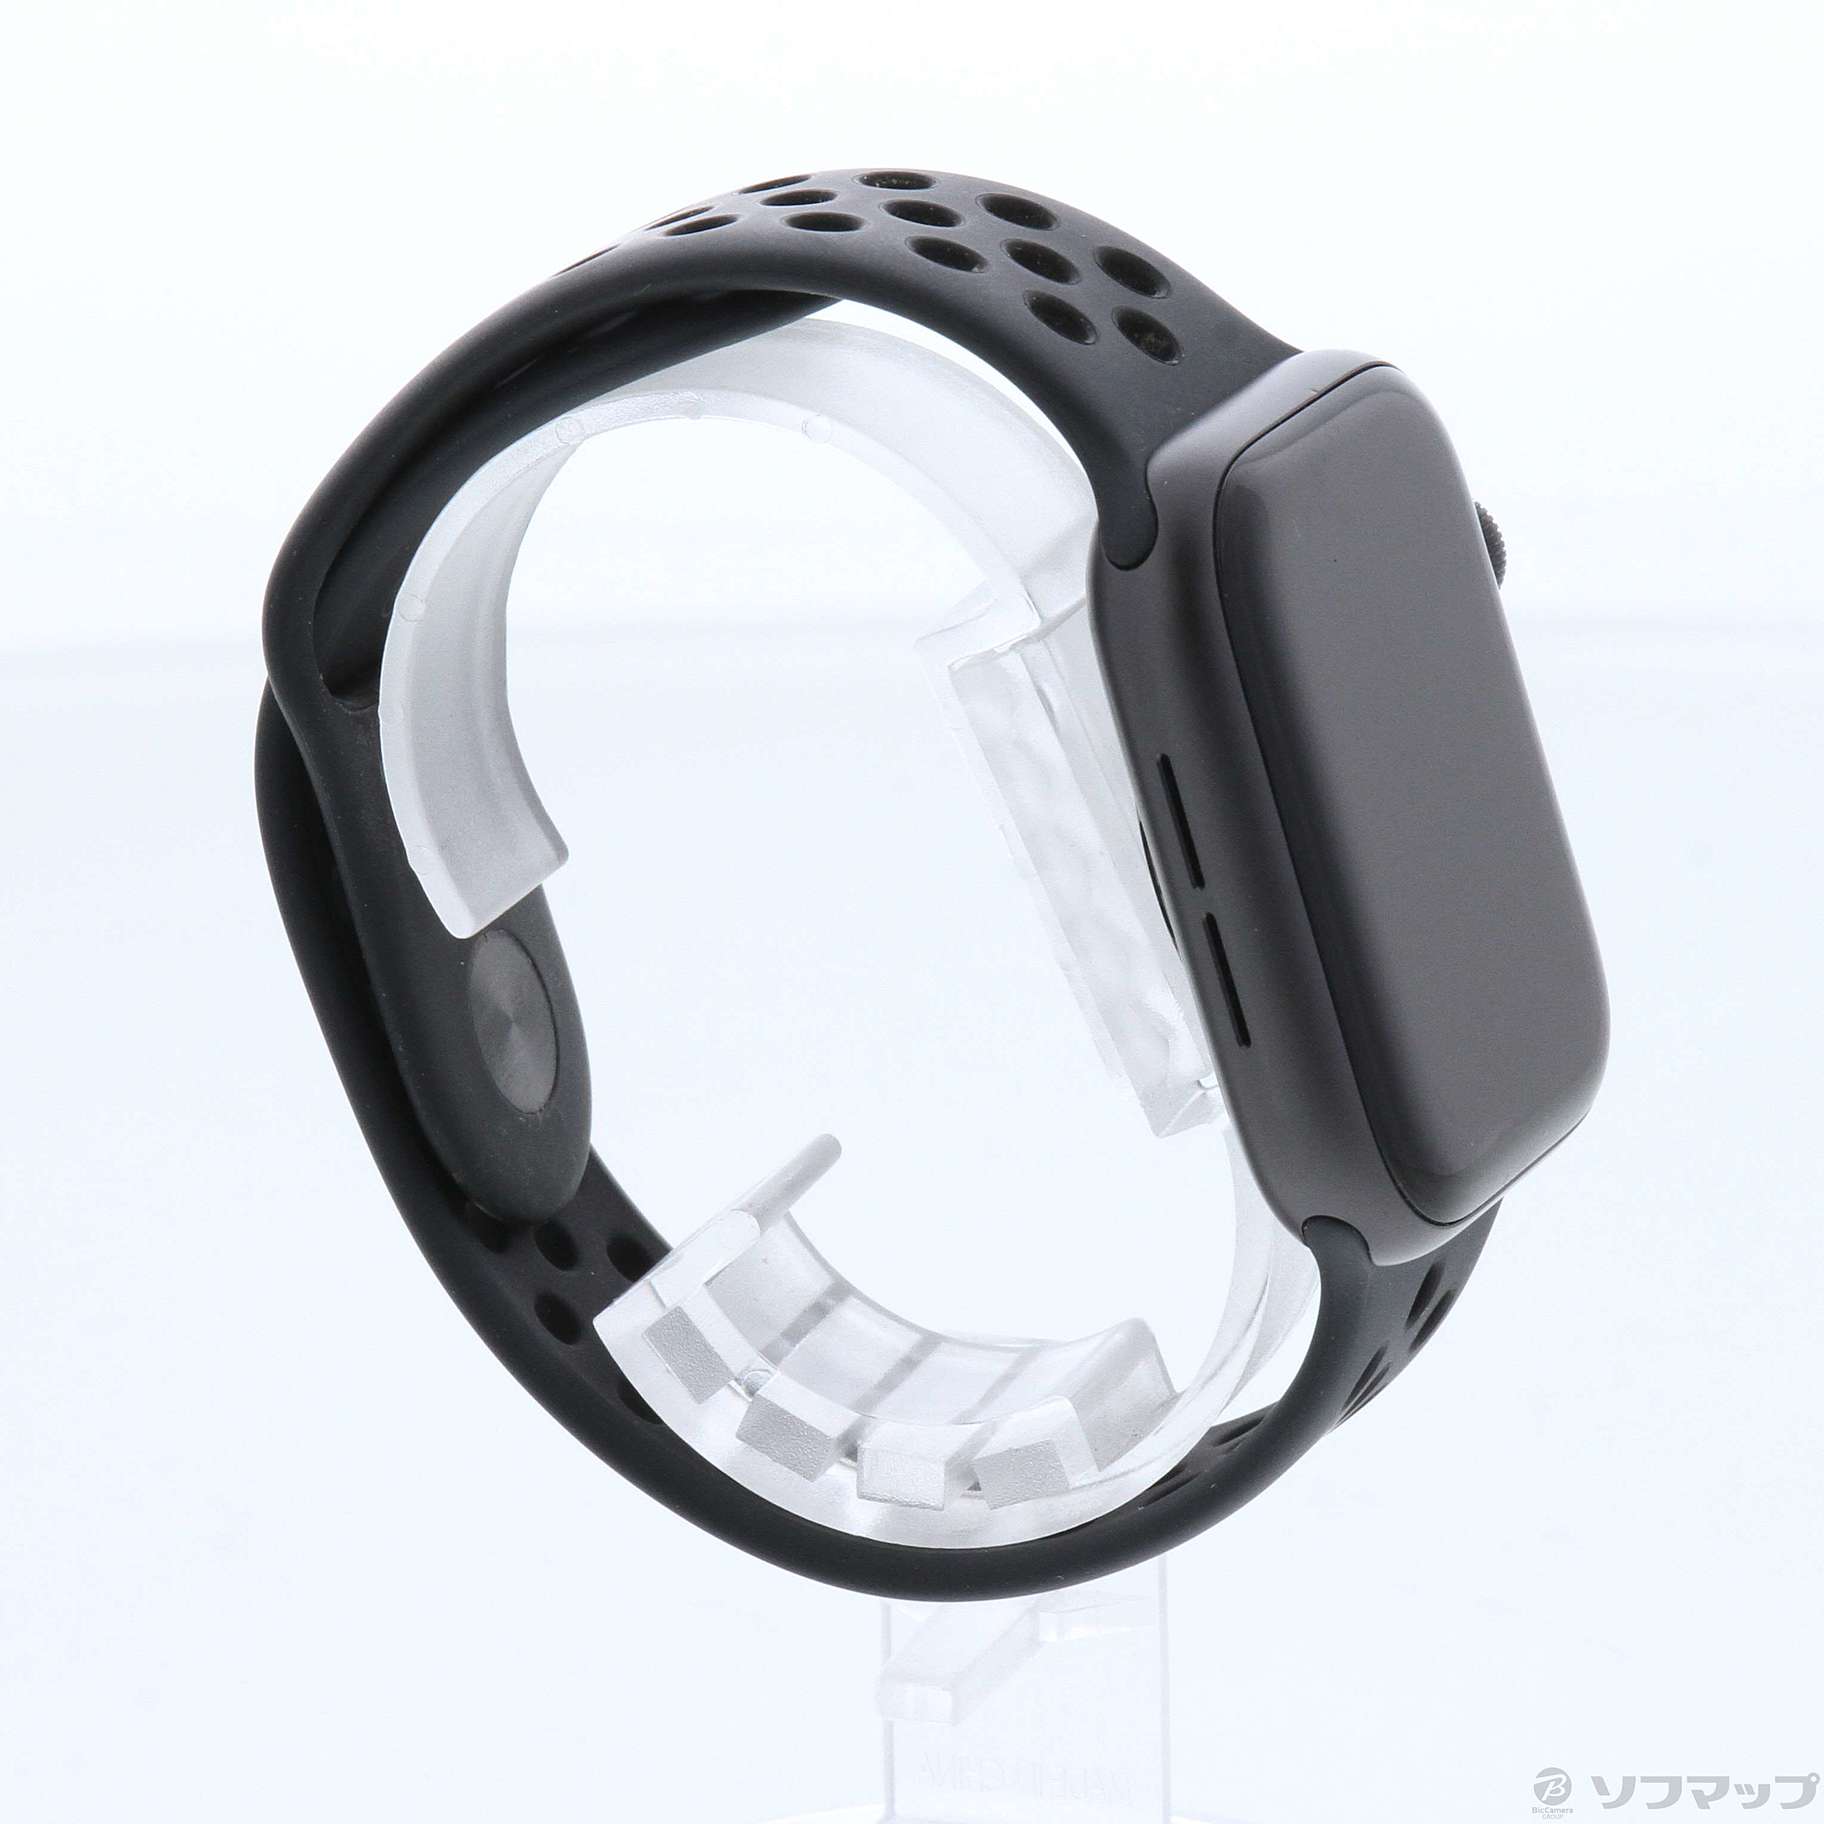 中古品〕 Apple Watch Series 5 Nike GPS + Cellular 44mm スペース 